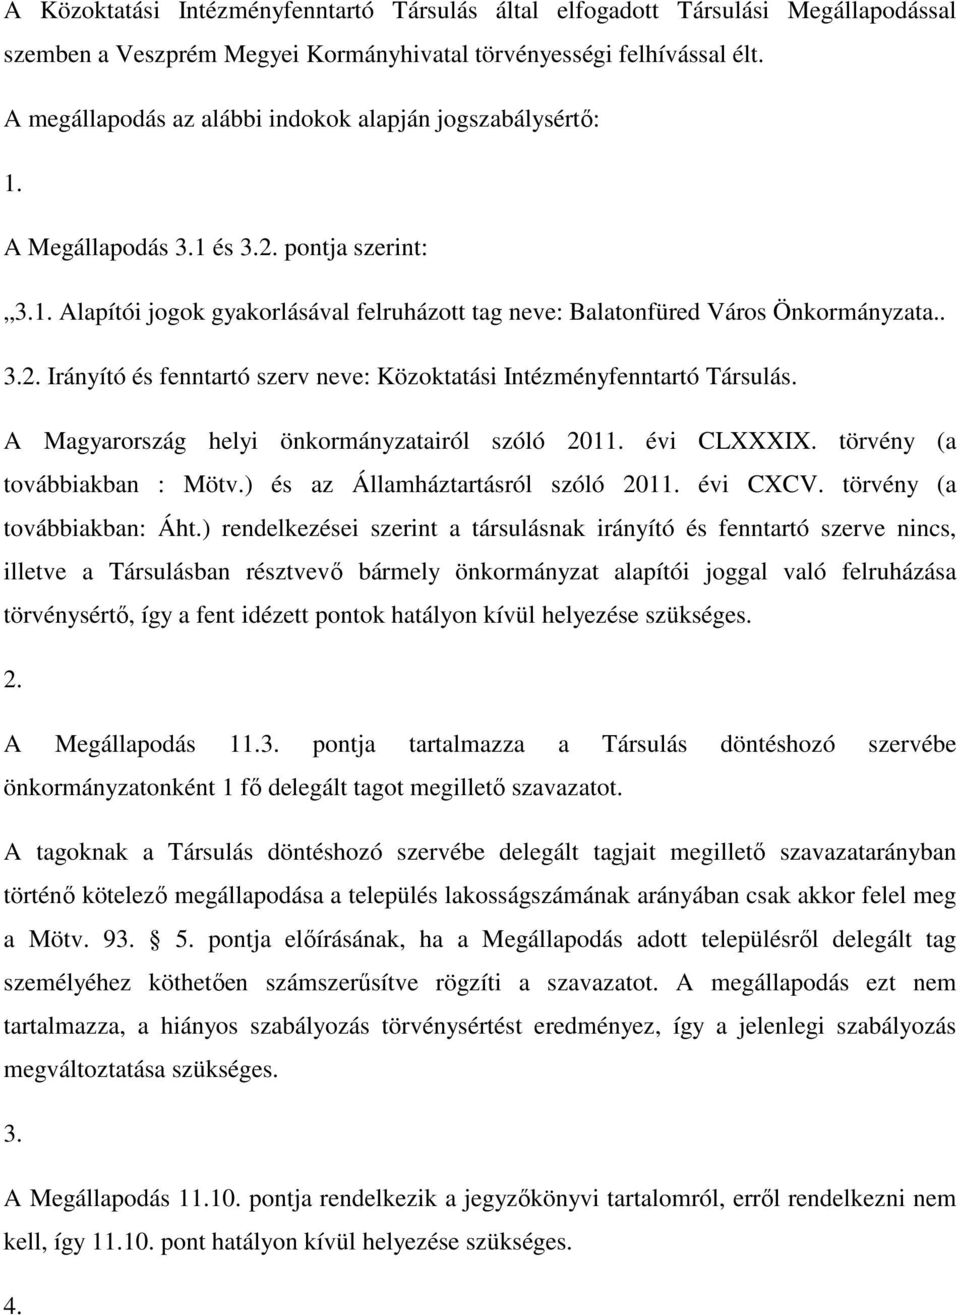 A Magyarország helyi önkormányzatairól szóló 2011. évi CLXXXIX. törvény (a továbbiakban : Mötv.) és az Államháztartásról szóló 2011. évi CXCV. törvény (a továbbiakban: Áht.